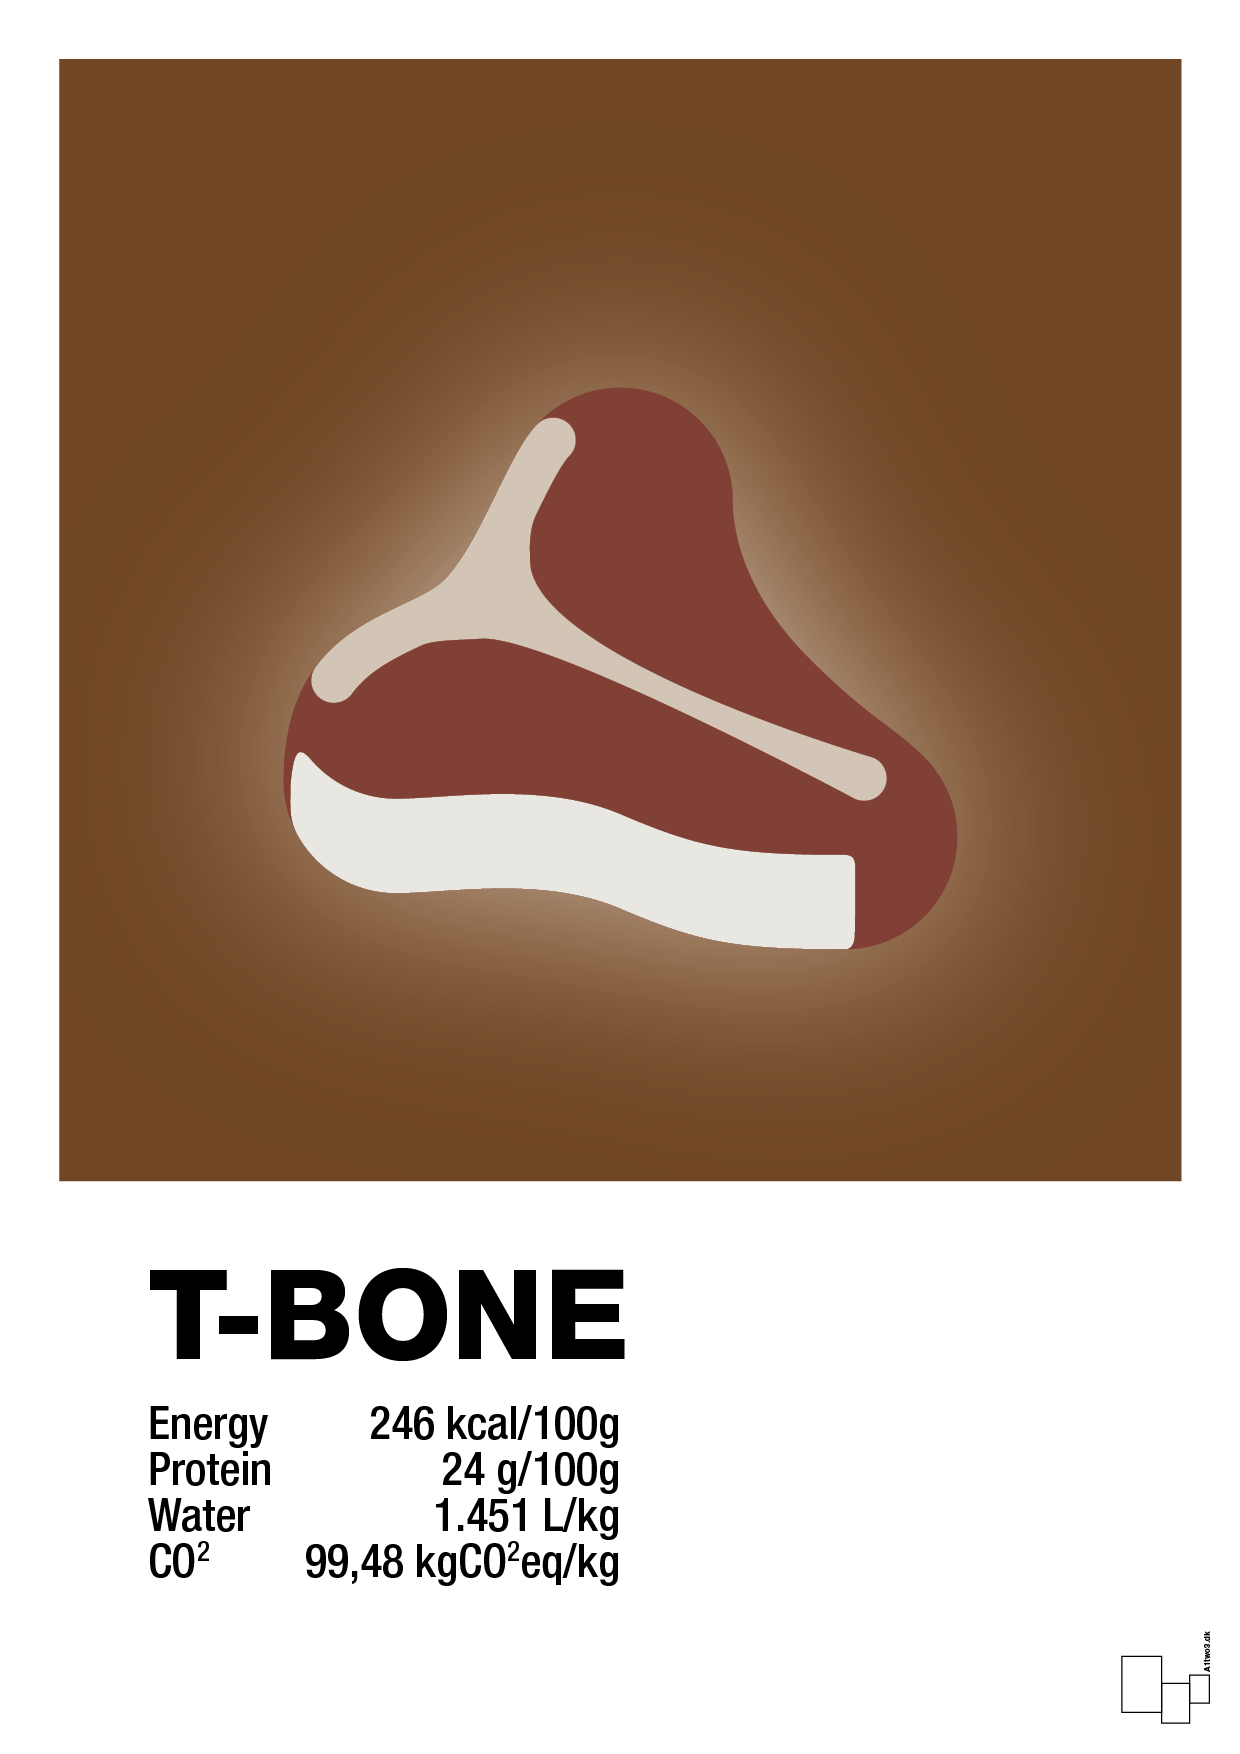 t-bone nutrition og miljø - Plakat med Mad & Drikke i Dark Brown